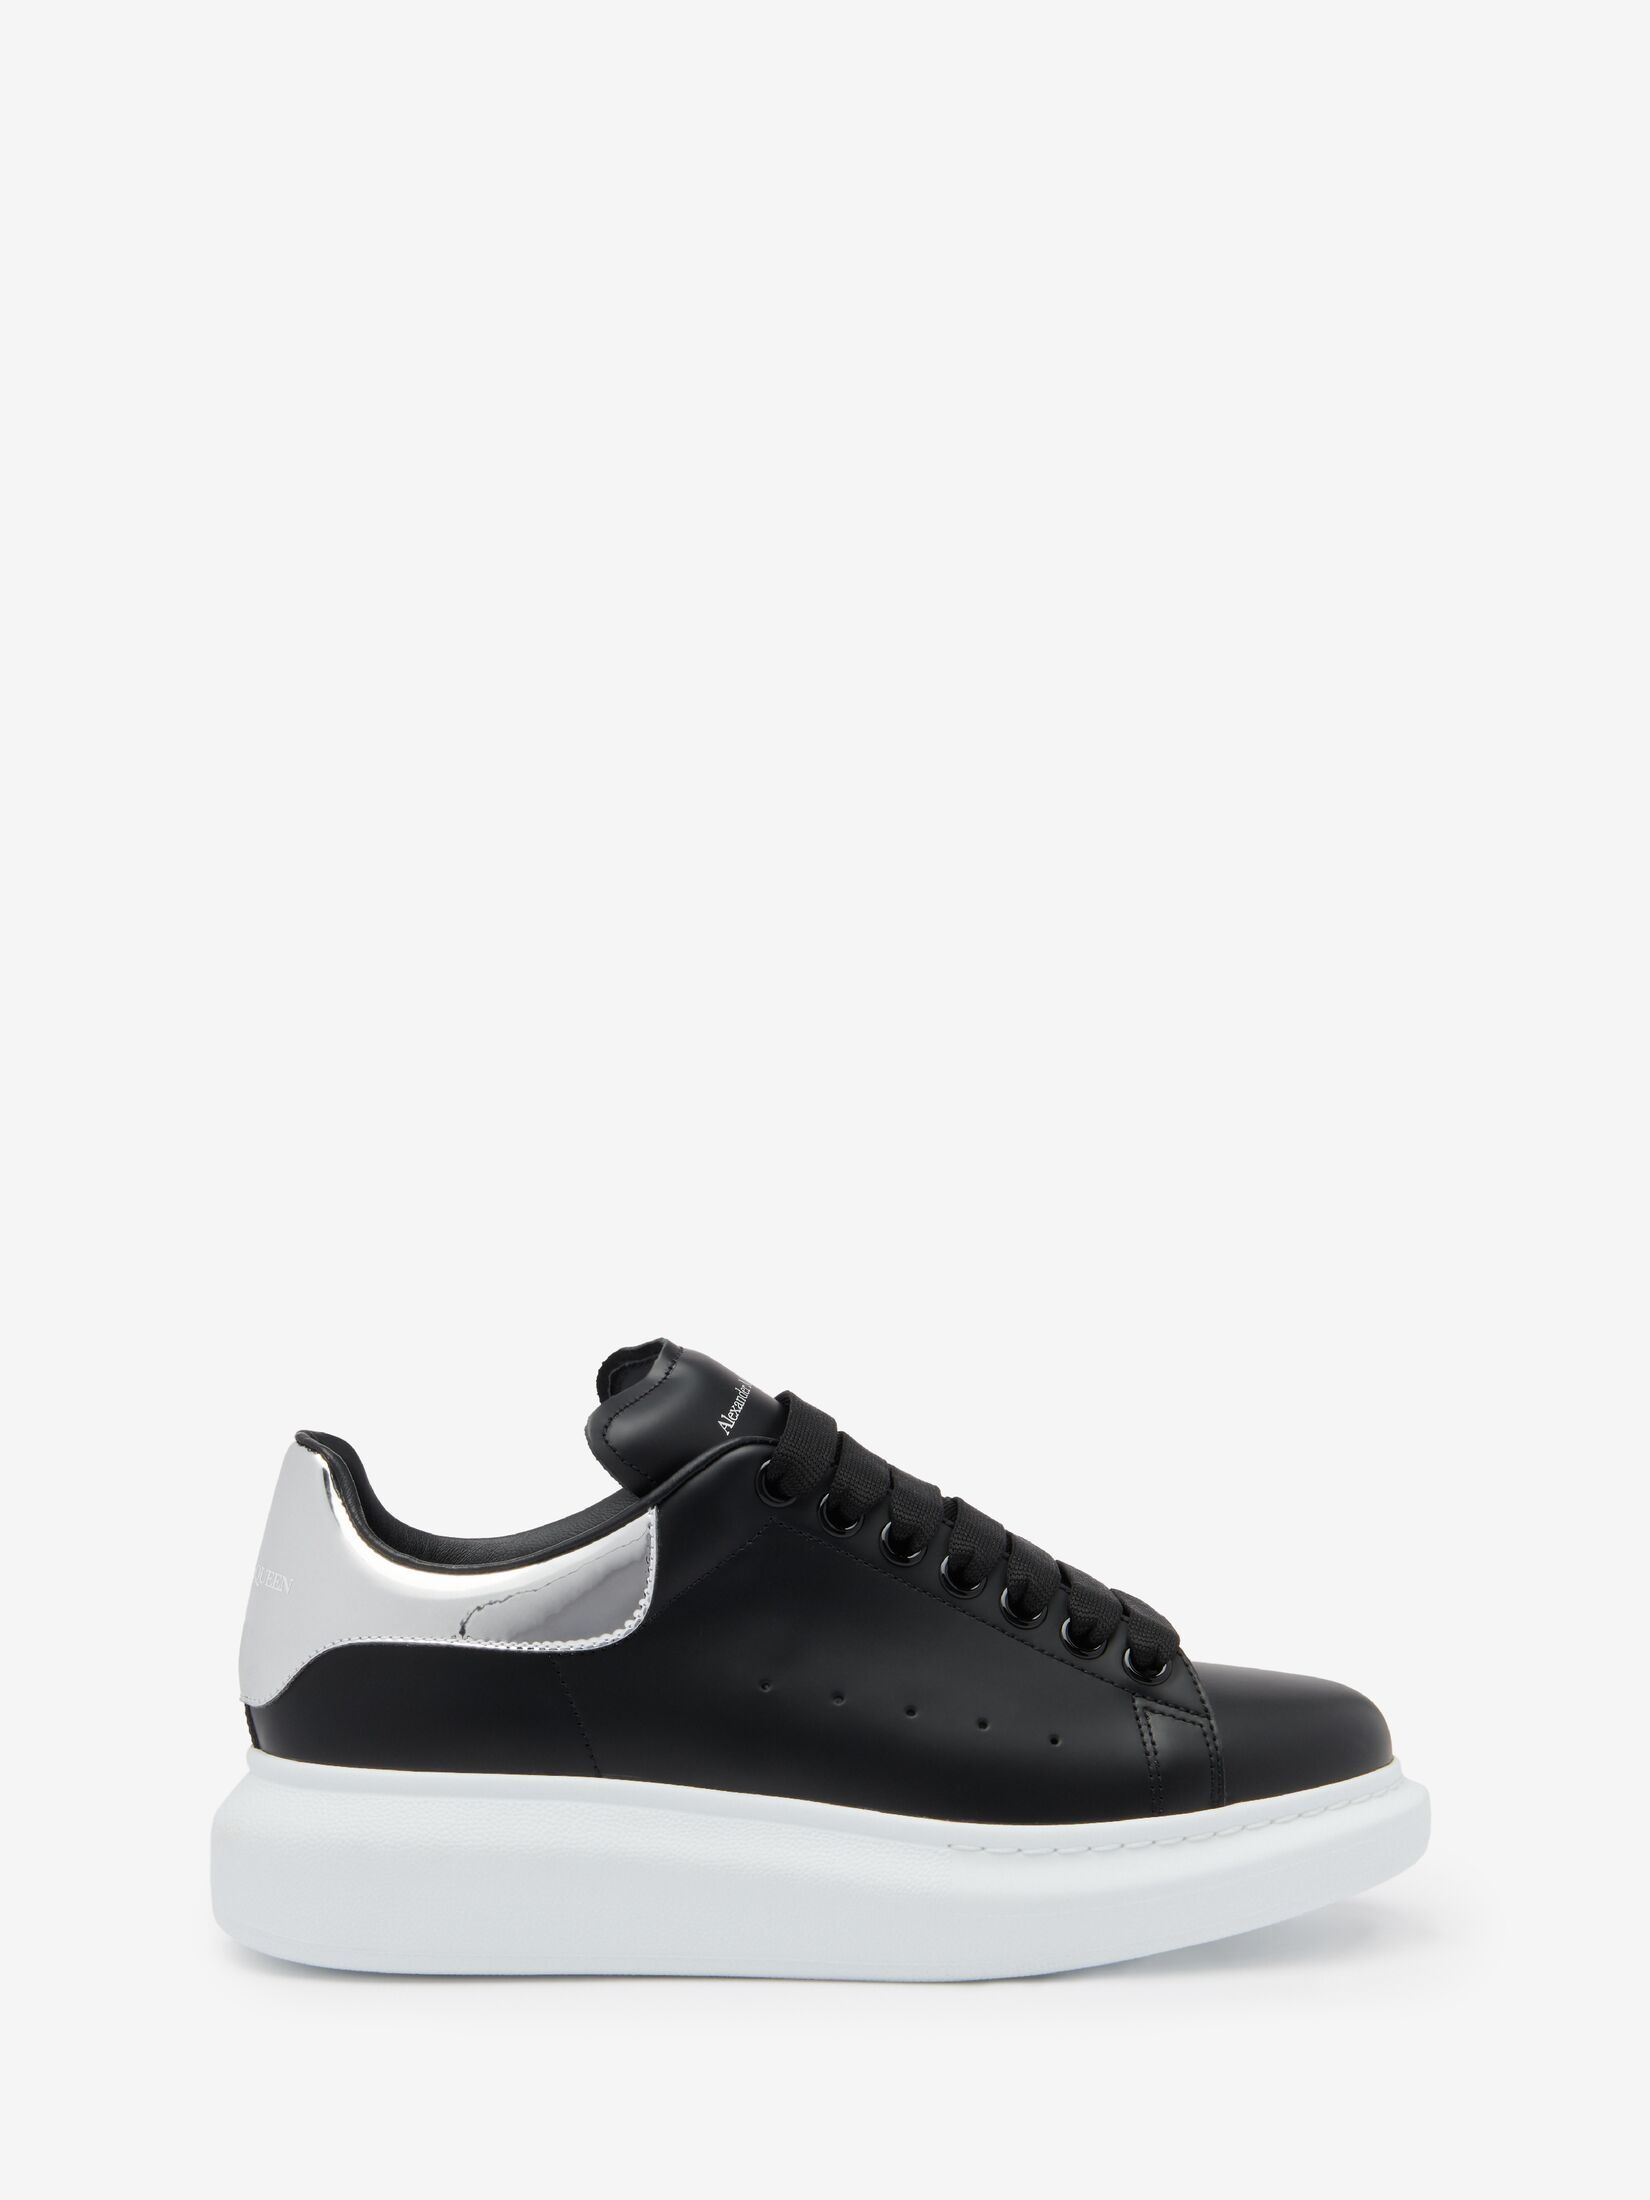 Women's Oversized Sneaker in Black/silver - 1